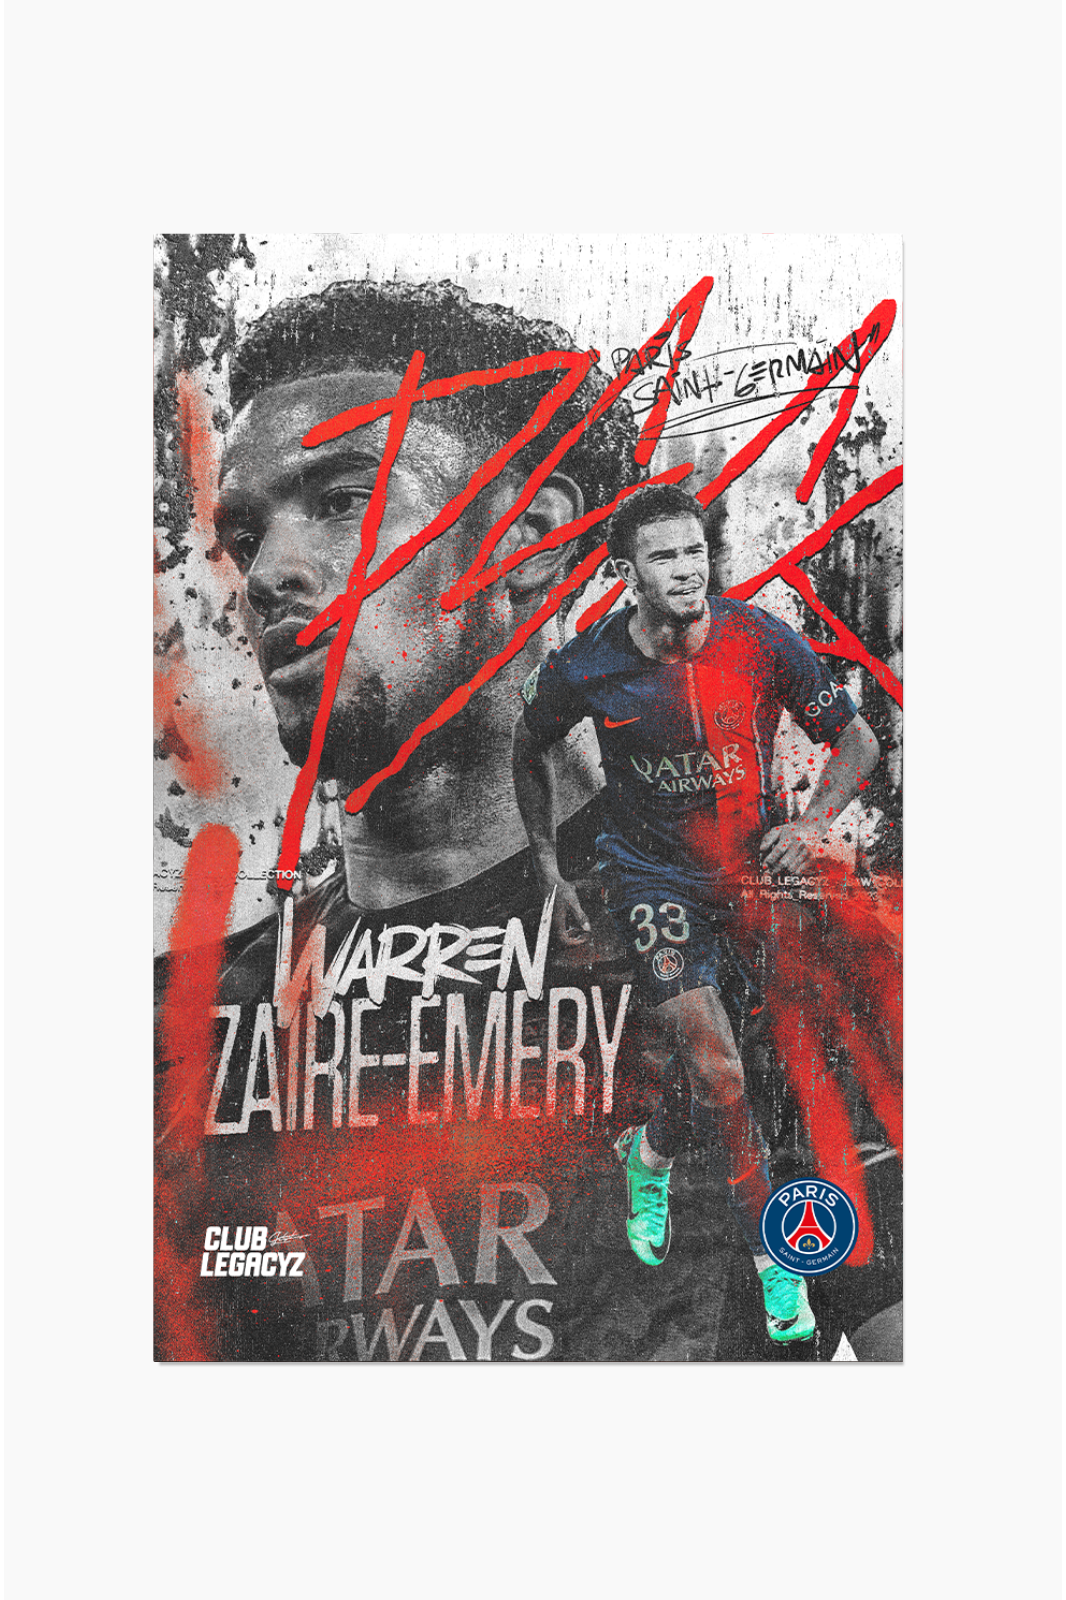 Paris Saint-Germain - Warren Zaïre-Emery Black & White Poster limited to 100